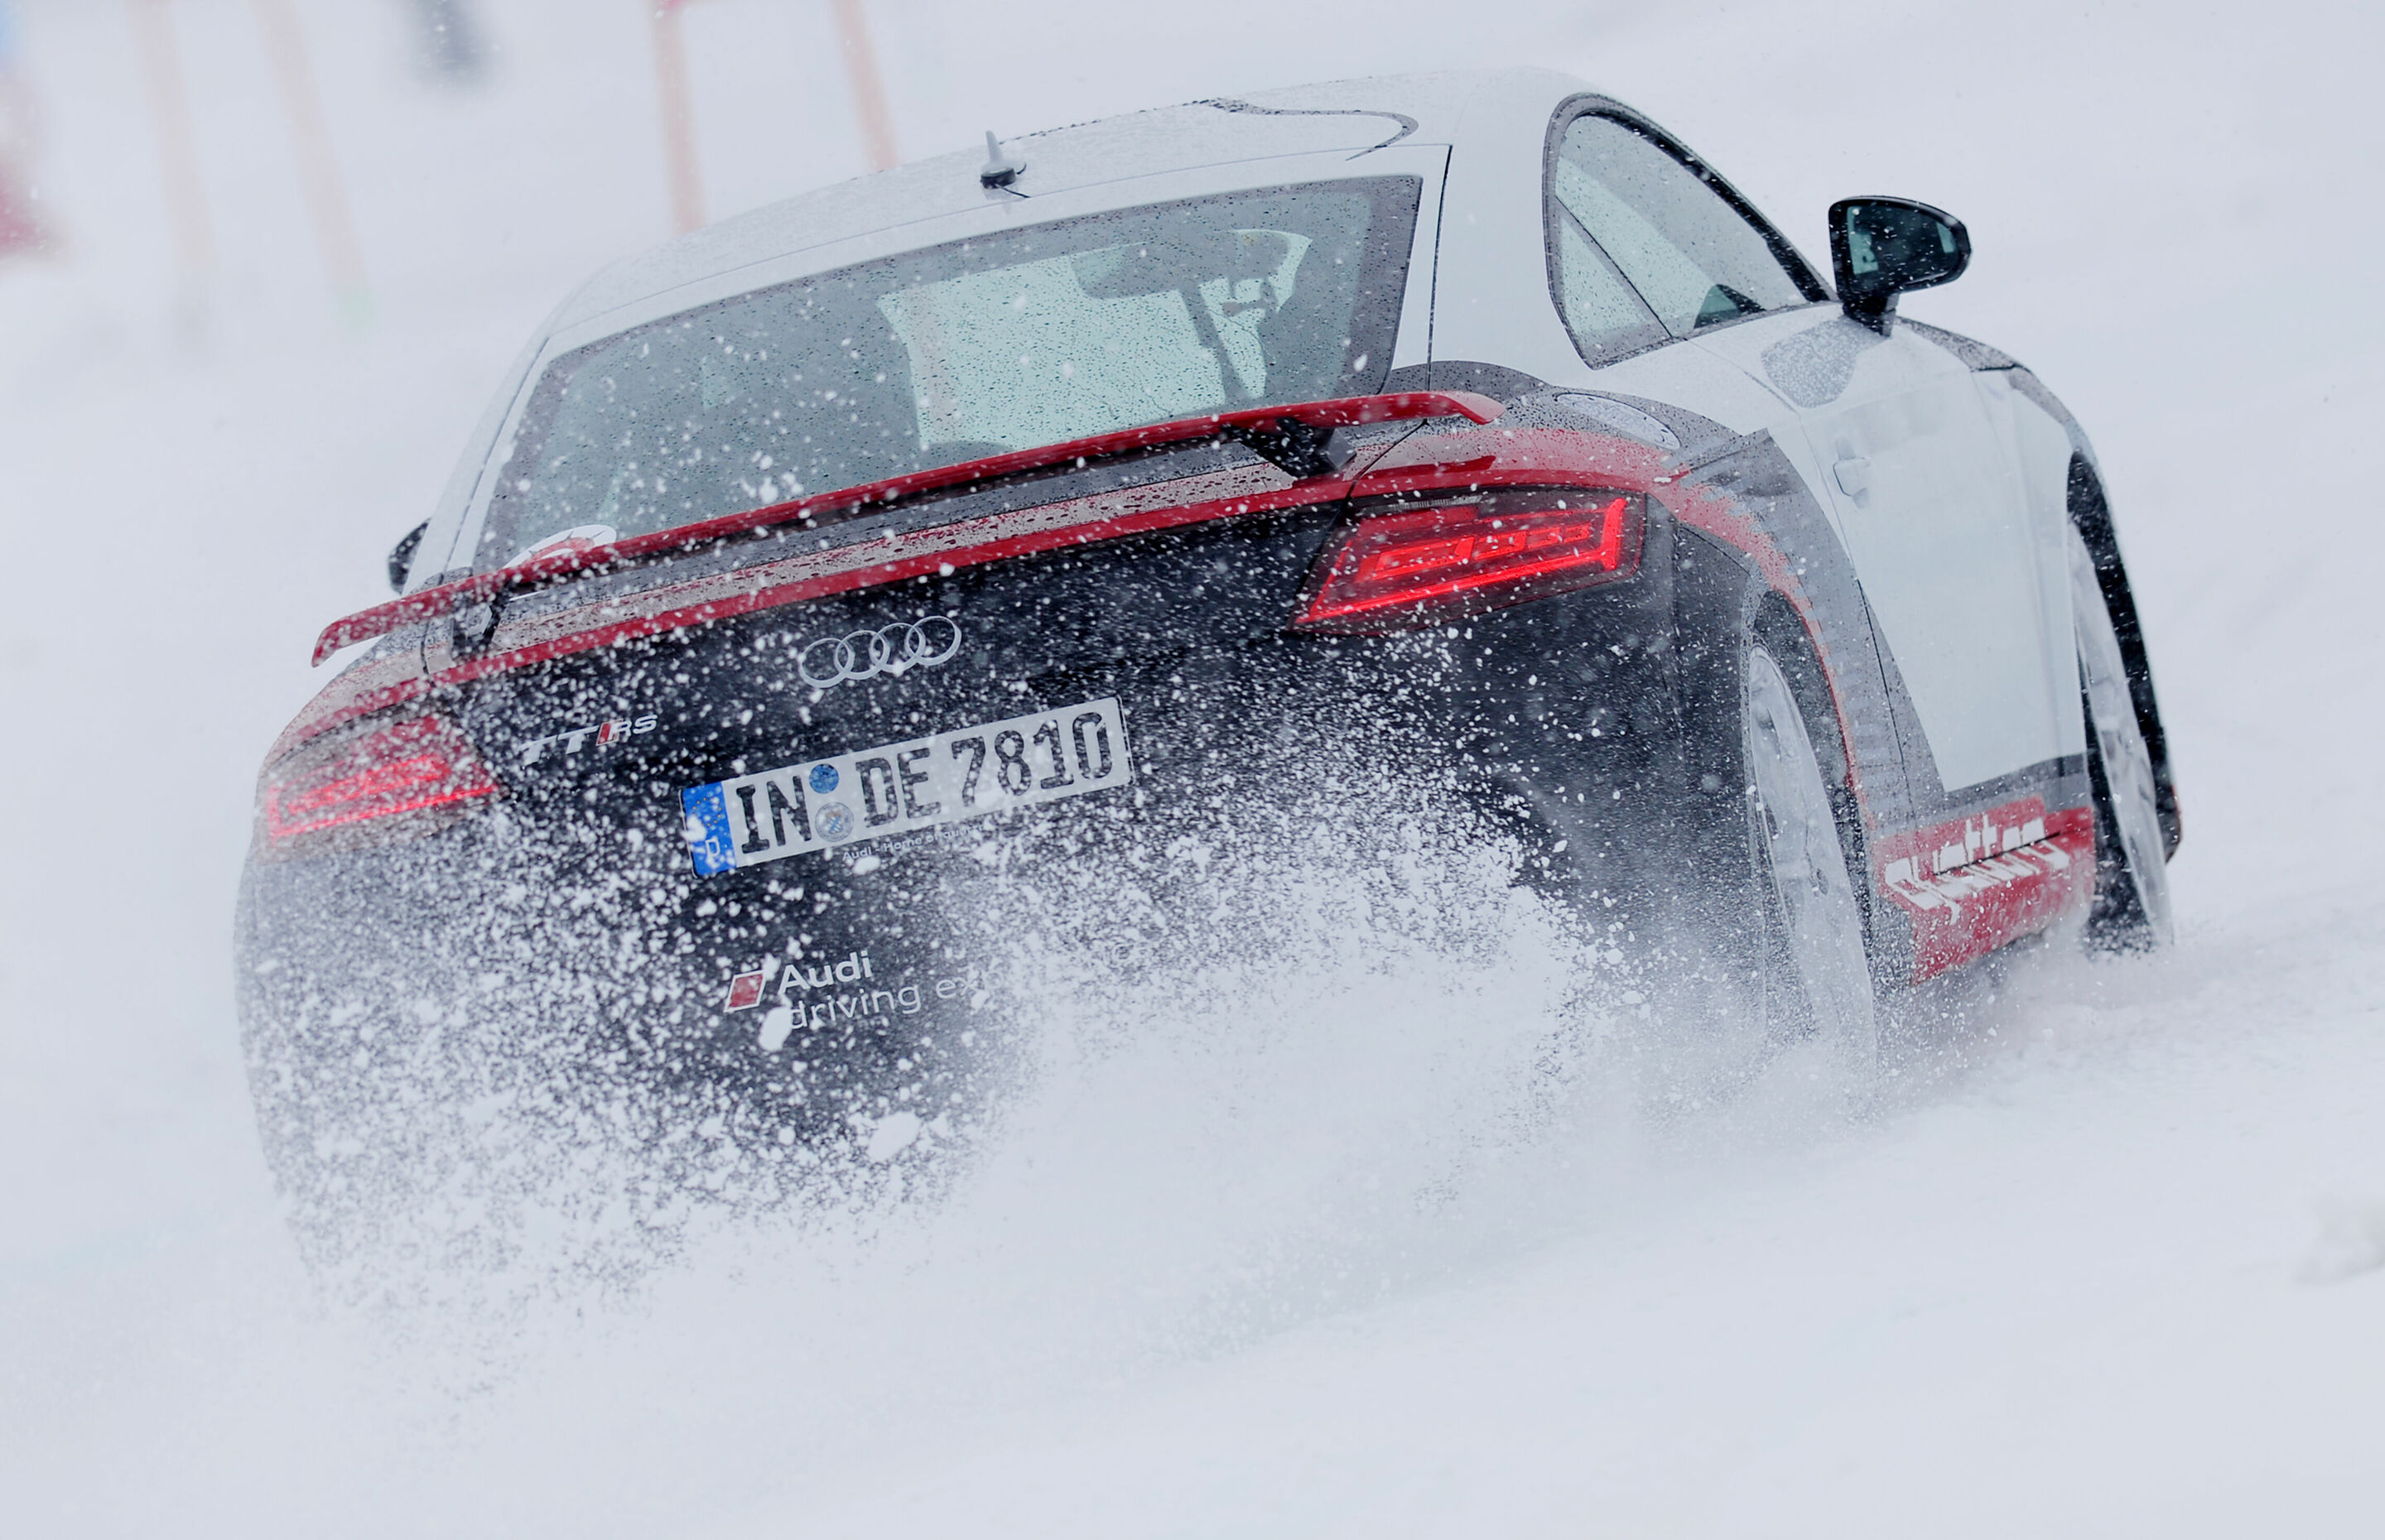 Audi #SuperQ St. Moritz